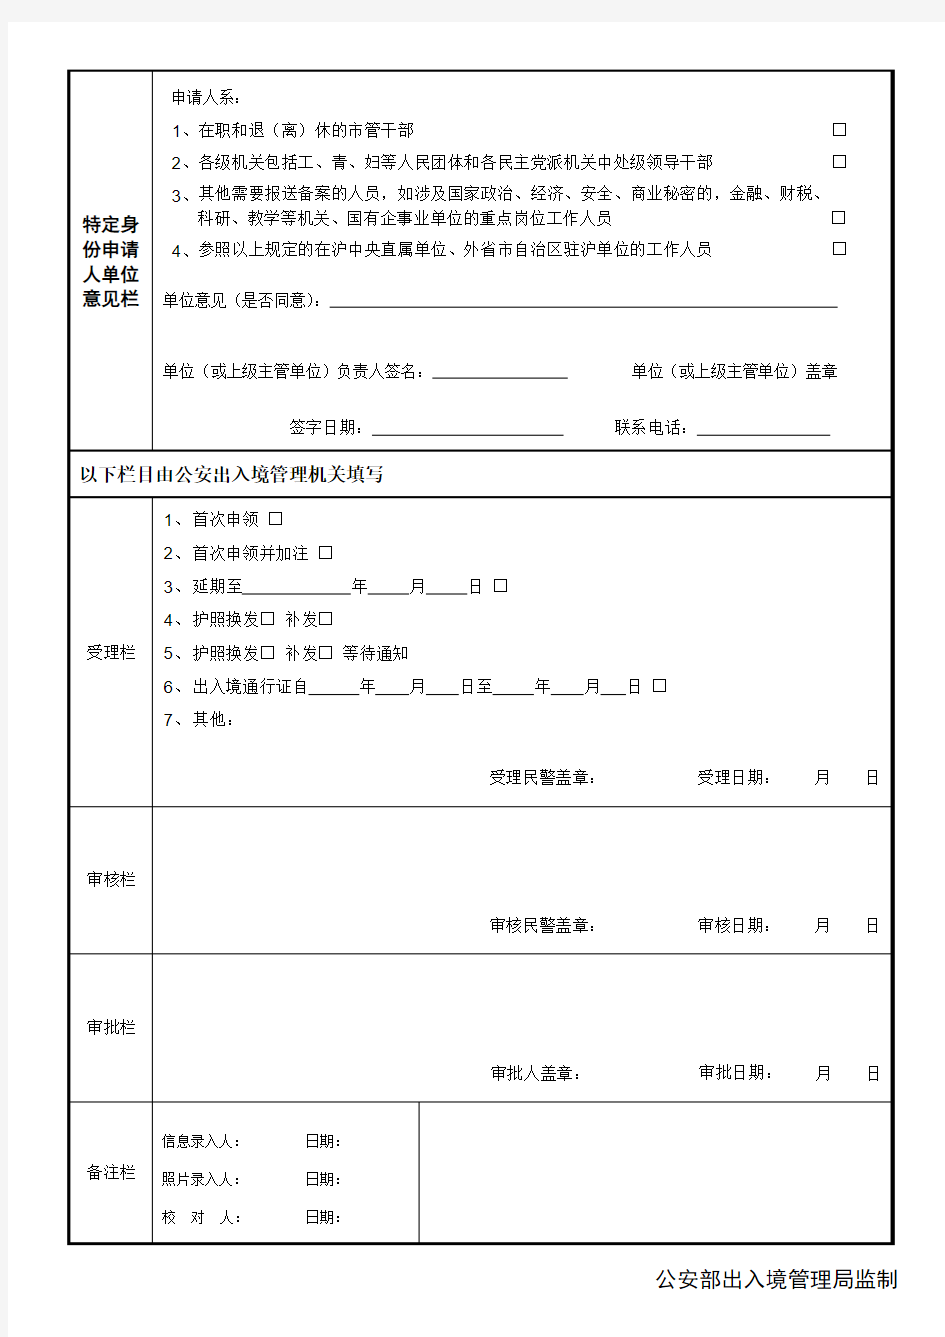 中华人民共和国普通护照申请表